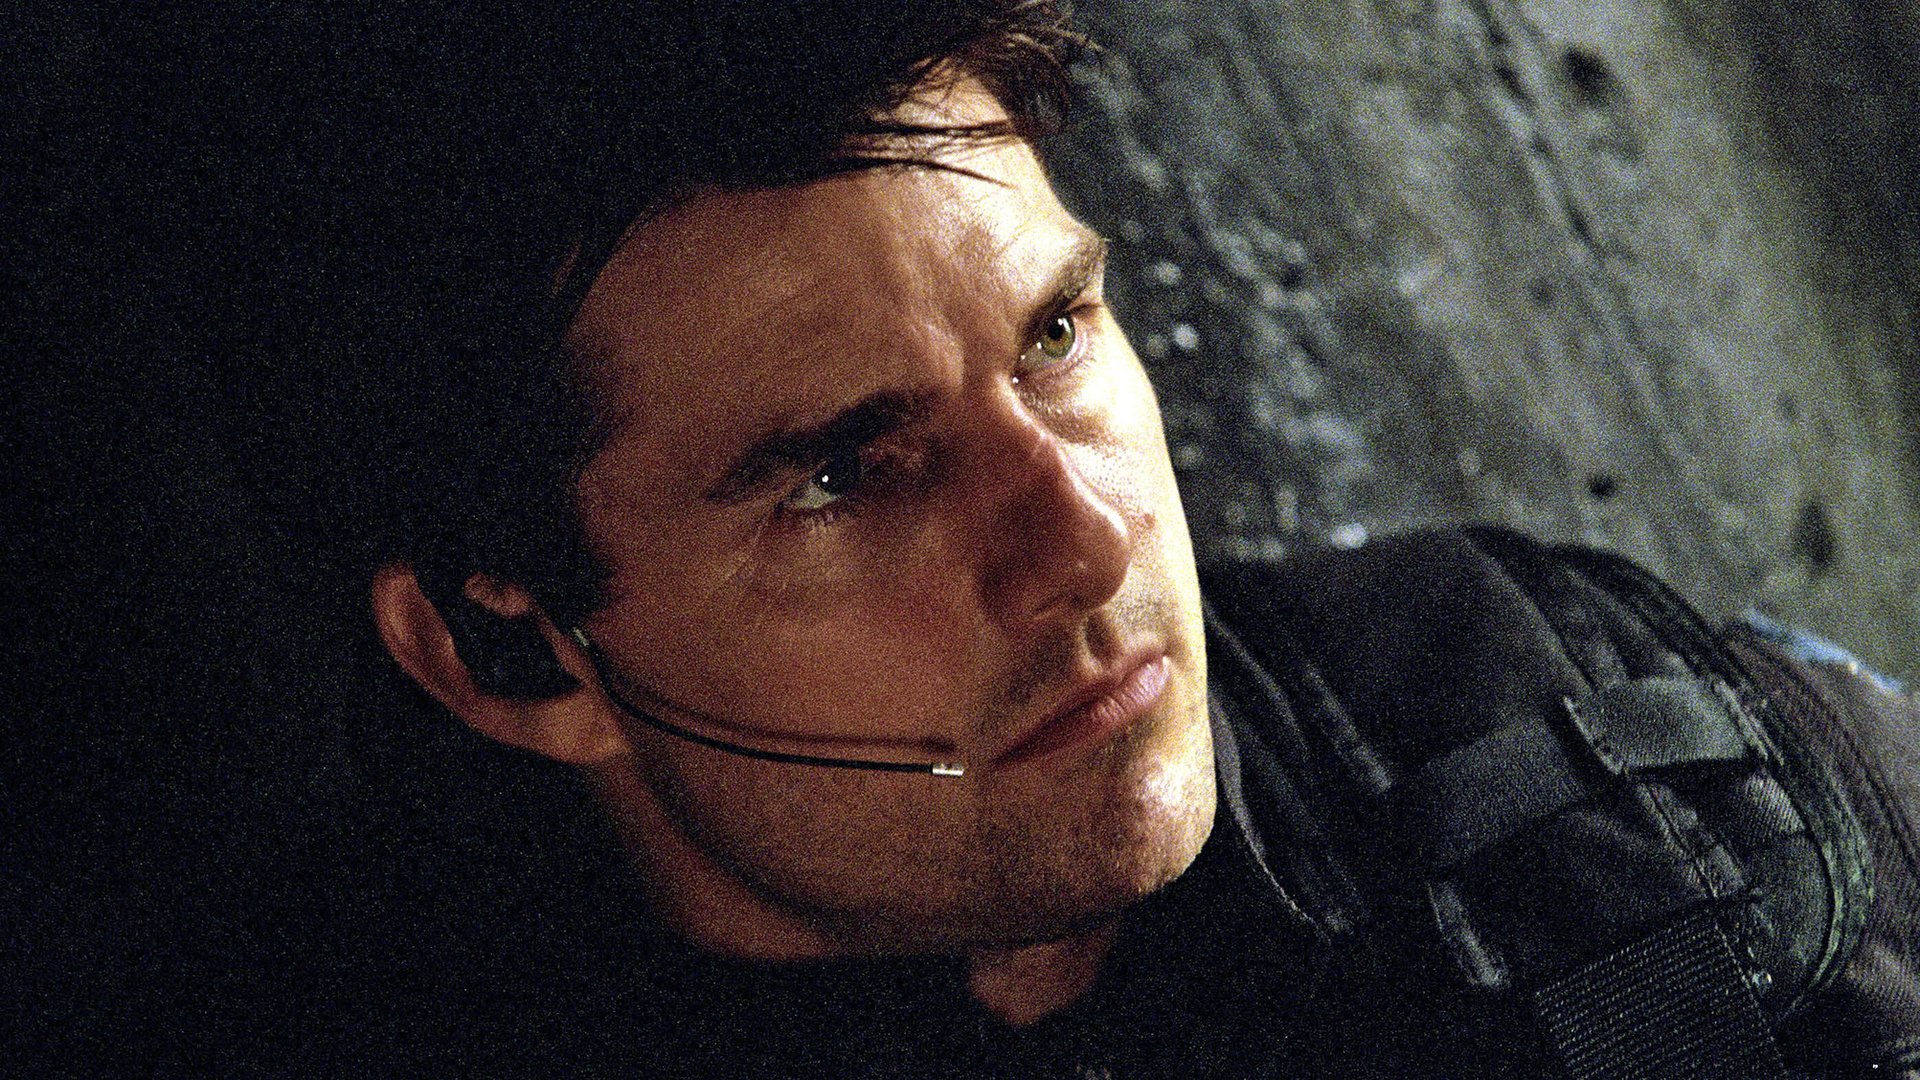 #Perfekt zu „Top Gun 2“: Tom Cruise stürzt sich Donnerstag im TV in gleich 3 waghalsige Abenteuer